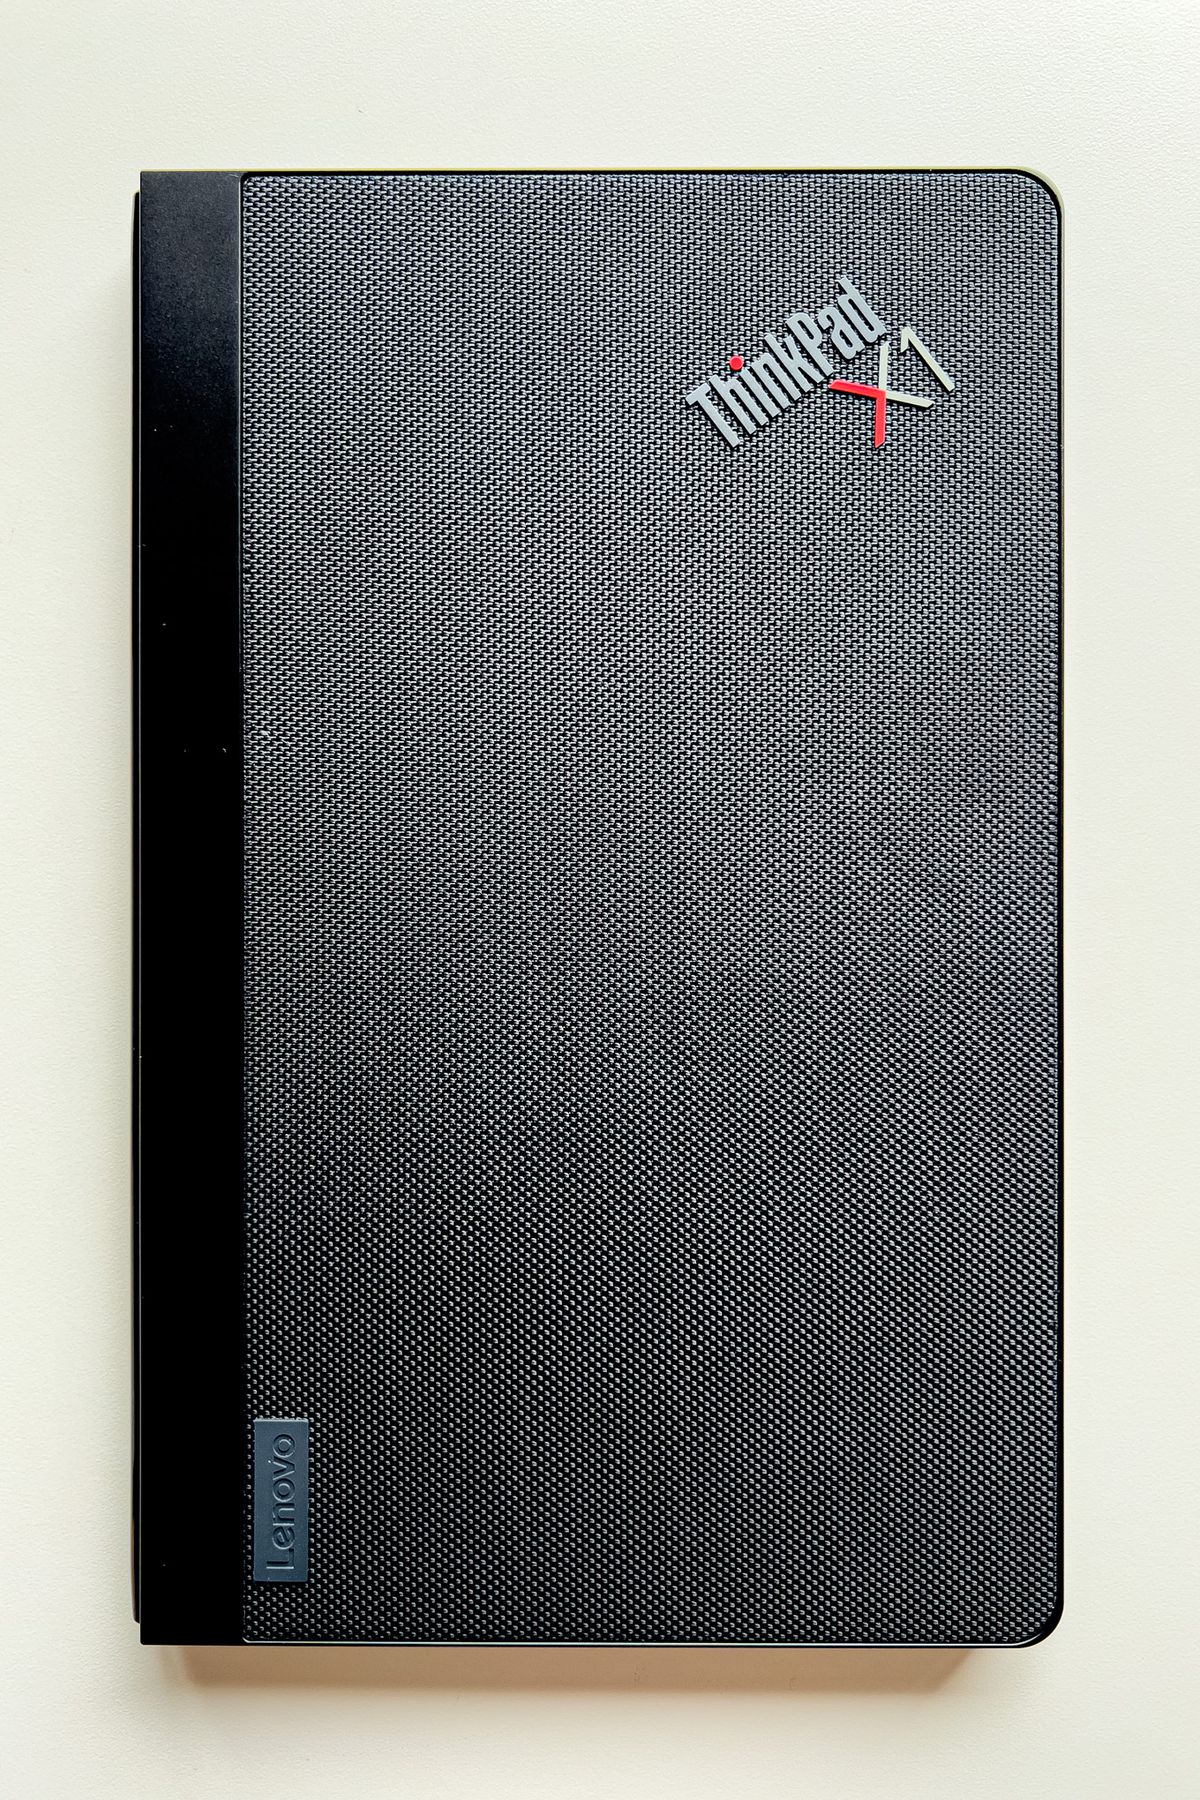 Le ThinkPad X1 Fold fermé sur une table blanche.